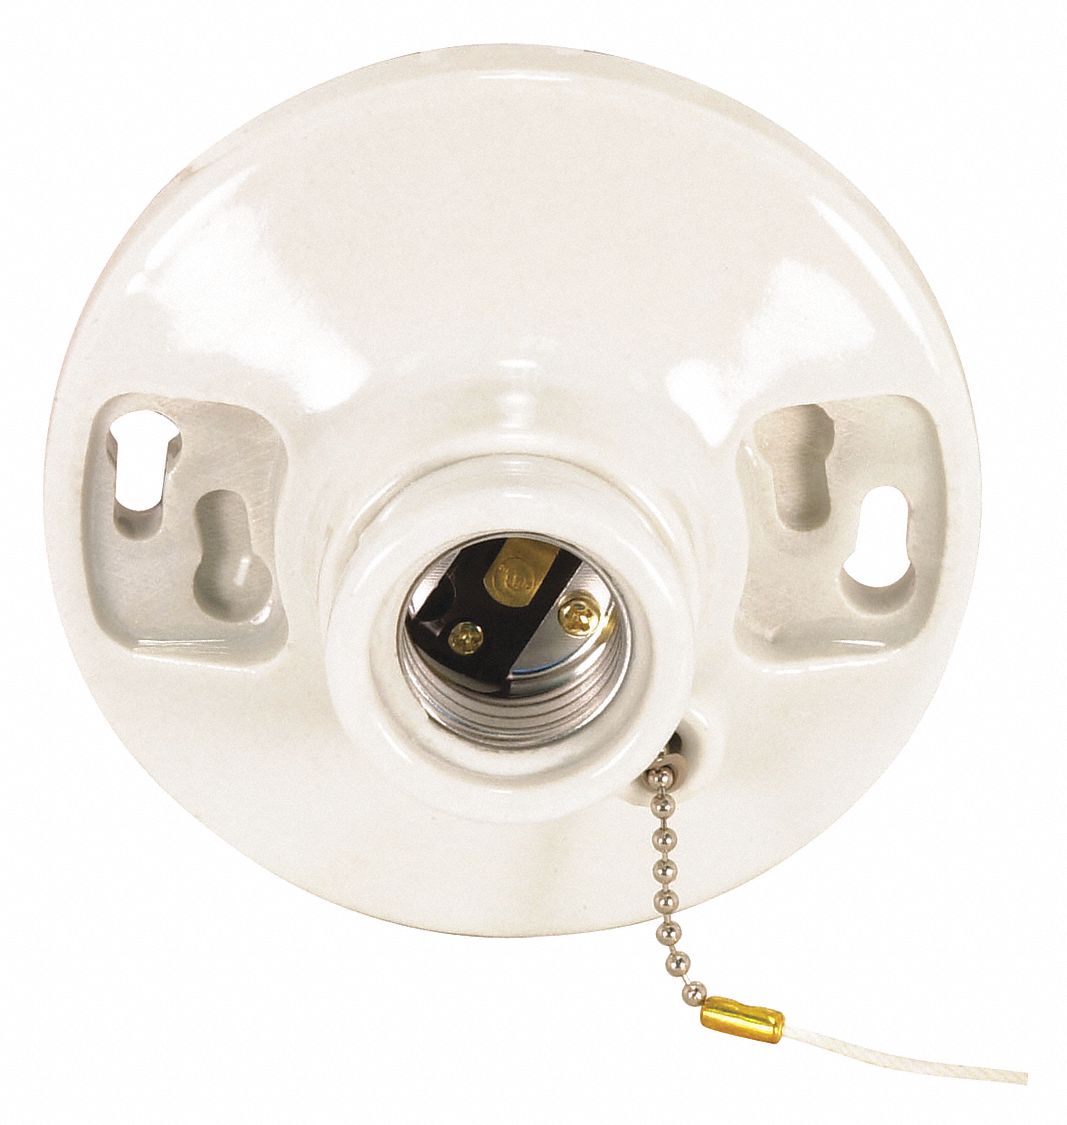 LampHolder Medium Base e26 Socket medium base lamp light bulb holder Porcelain 